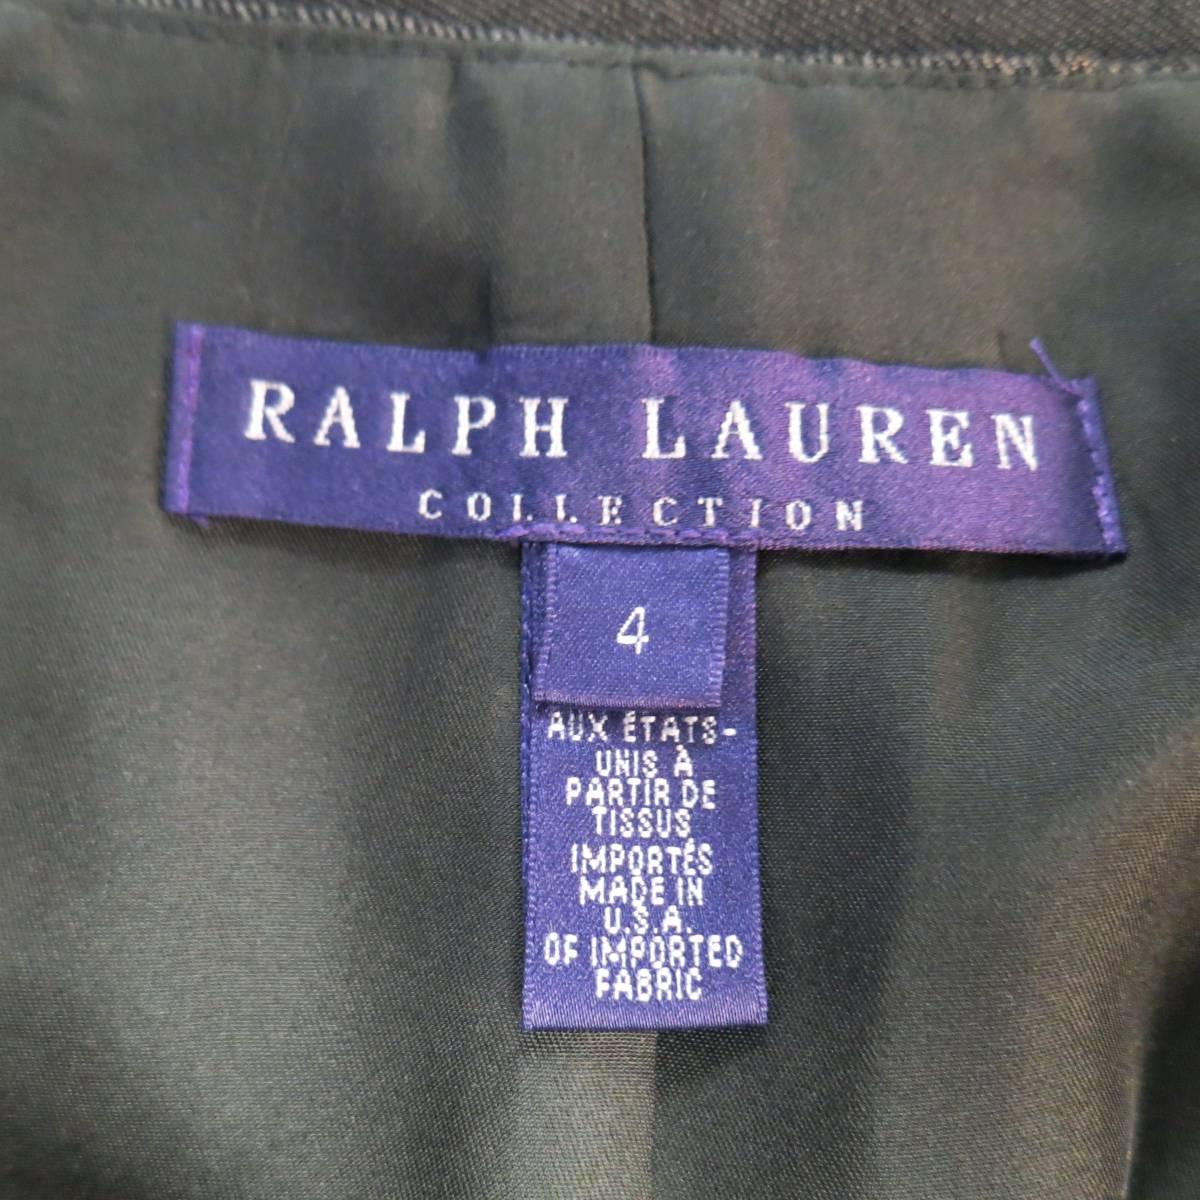 RALPH LAUREN COLLECTION Pencil Skirt Size 4 Metallic Grey Wool Blend ...